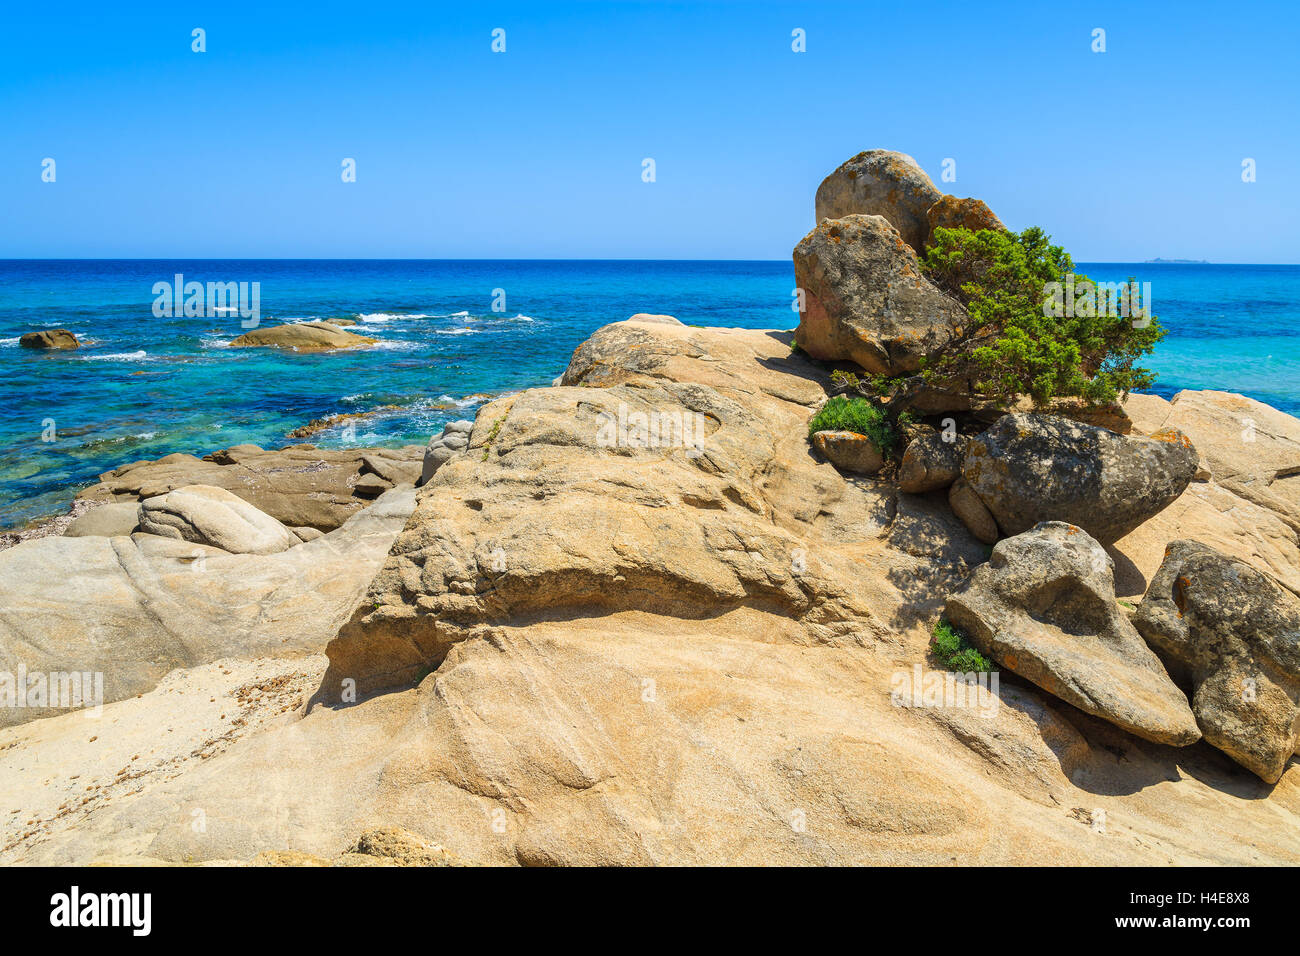 Rocks on coast Sardinia island near Peppino beach, Italy Stock Photo